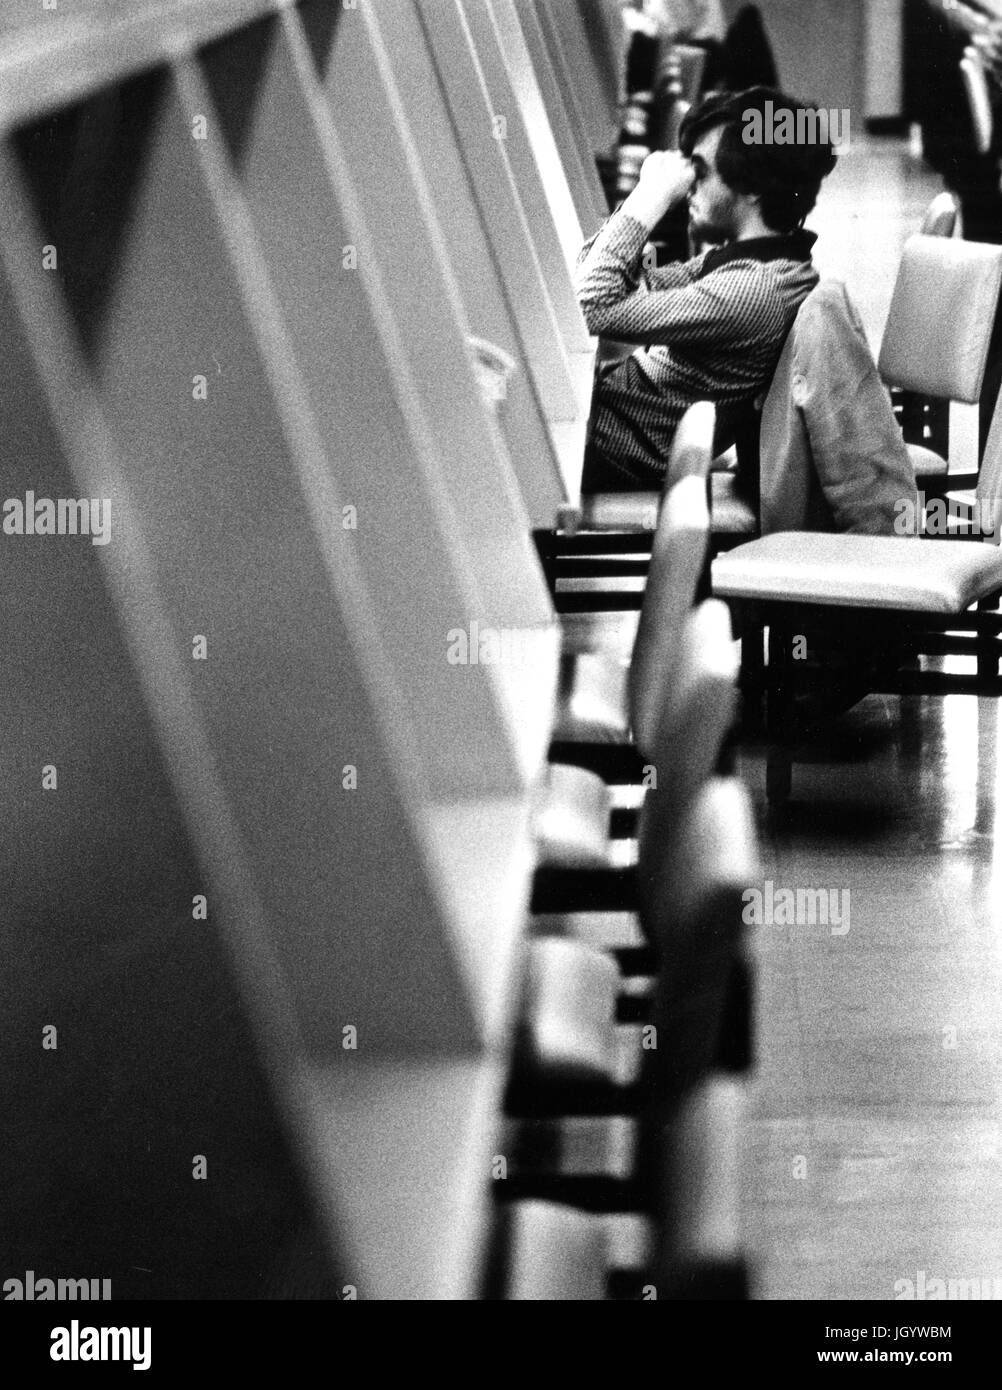 Johns Hopkins University Student sitzt an einer Studie Station ruht seine Hände auf den Kopf, in der Universität Milton S Eisenhower Library in Baltimore, Maryland, 1965. Stockfoto